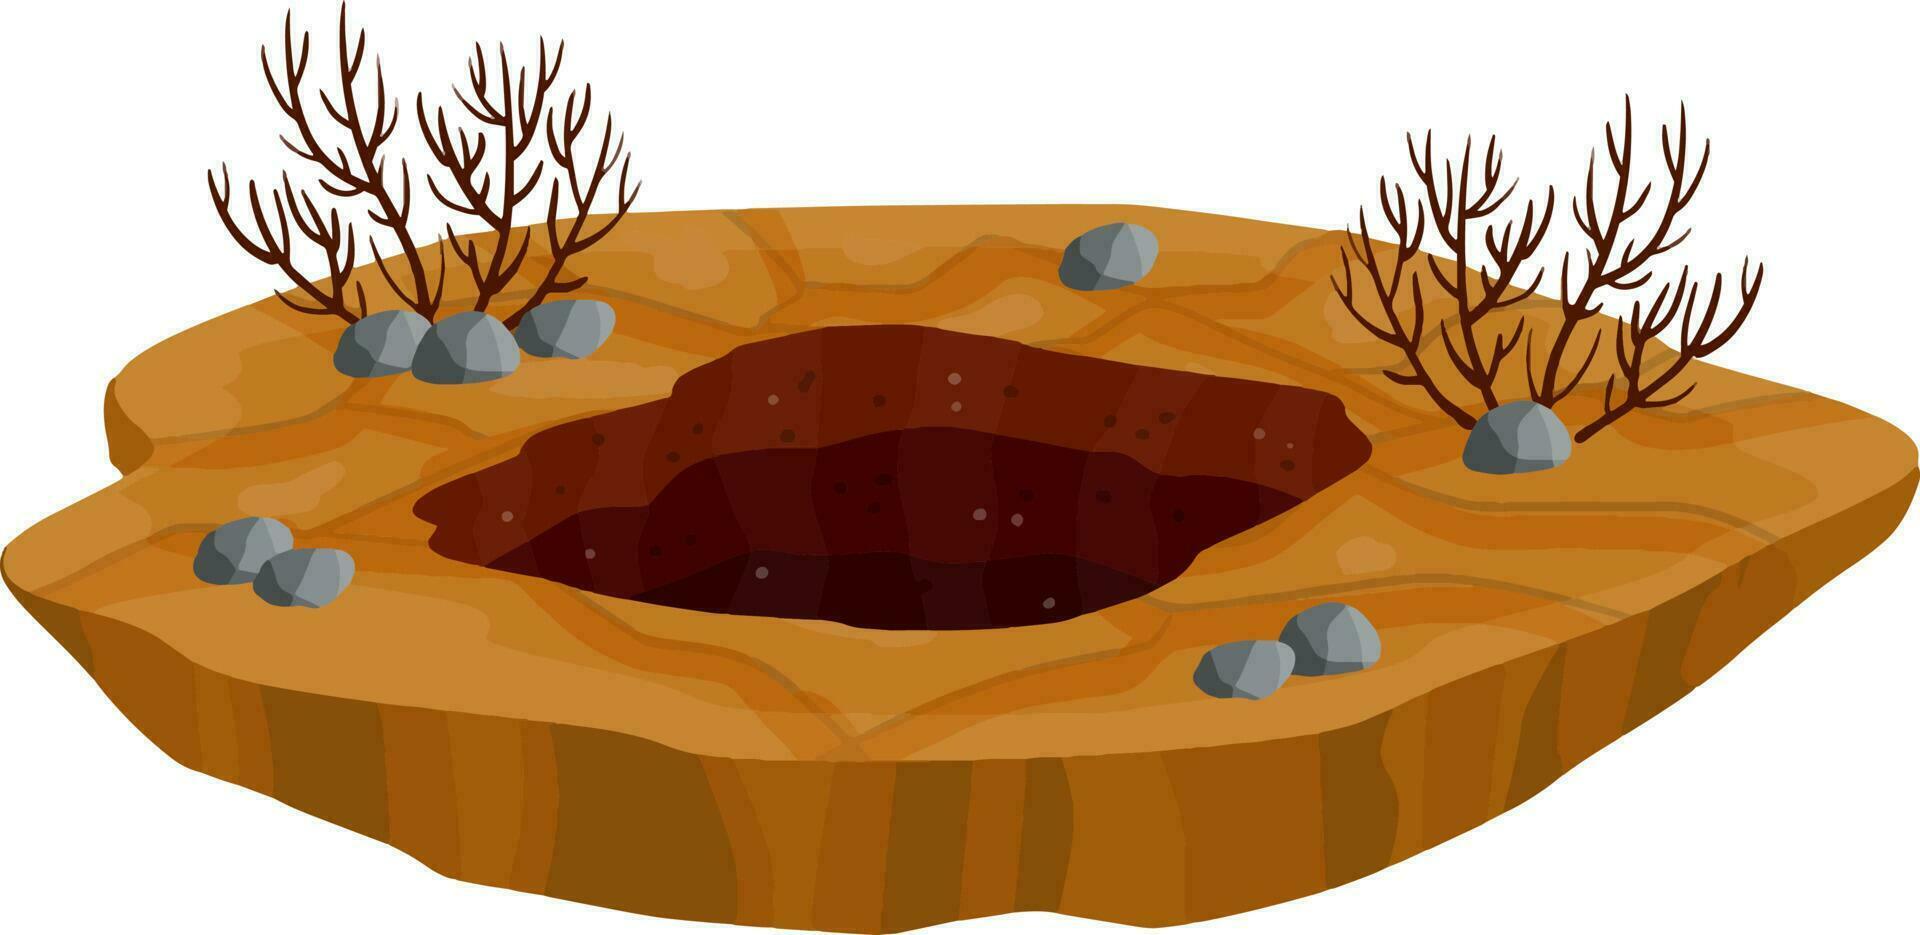 großes Loch im Boden. brauner trockener Boden und meins. Element der Wüstenlandschaft. Cartoon-Illustration vektor